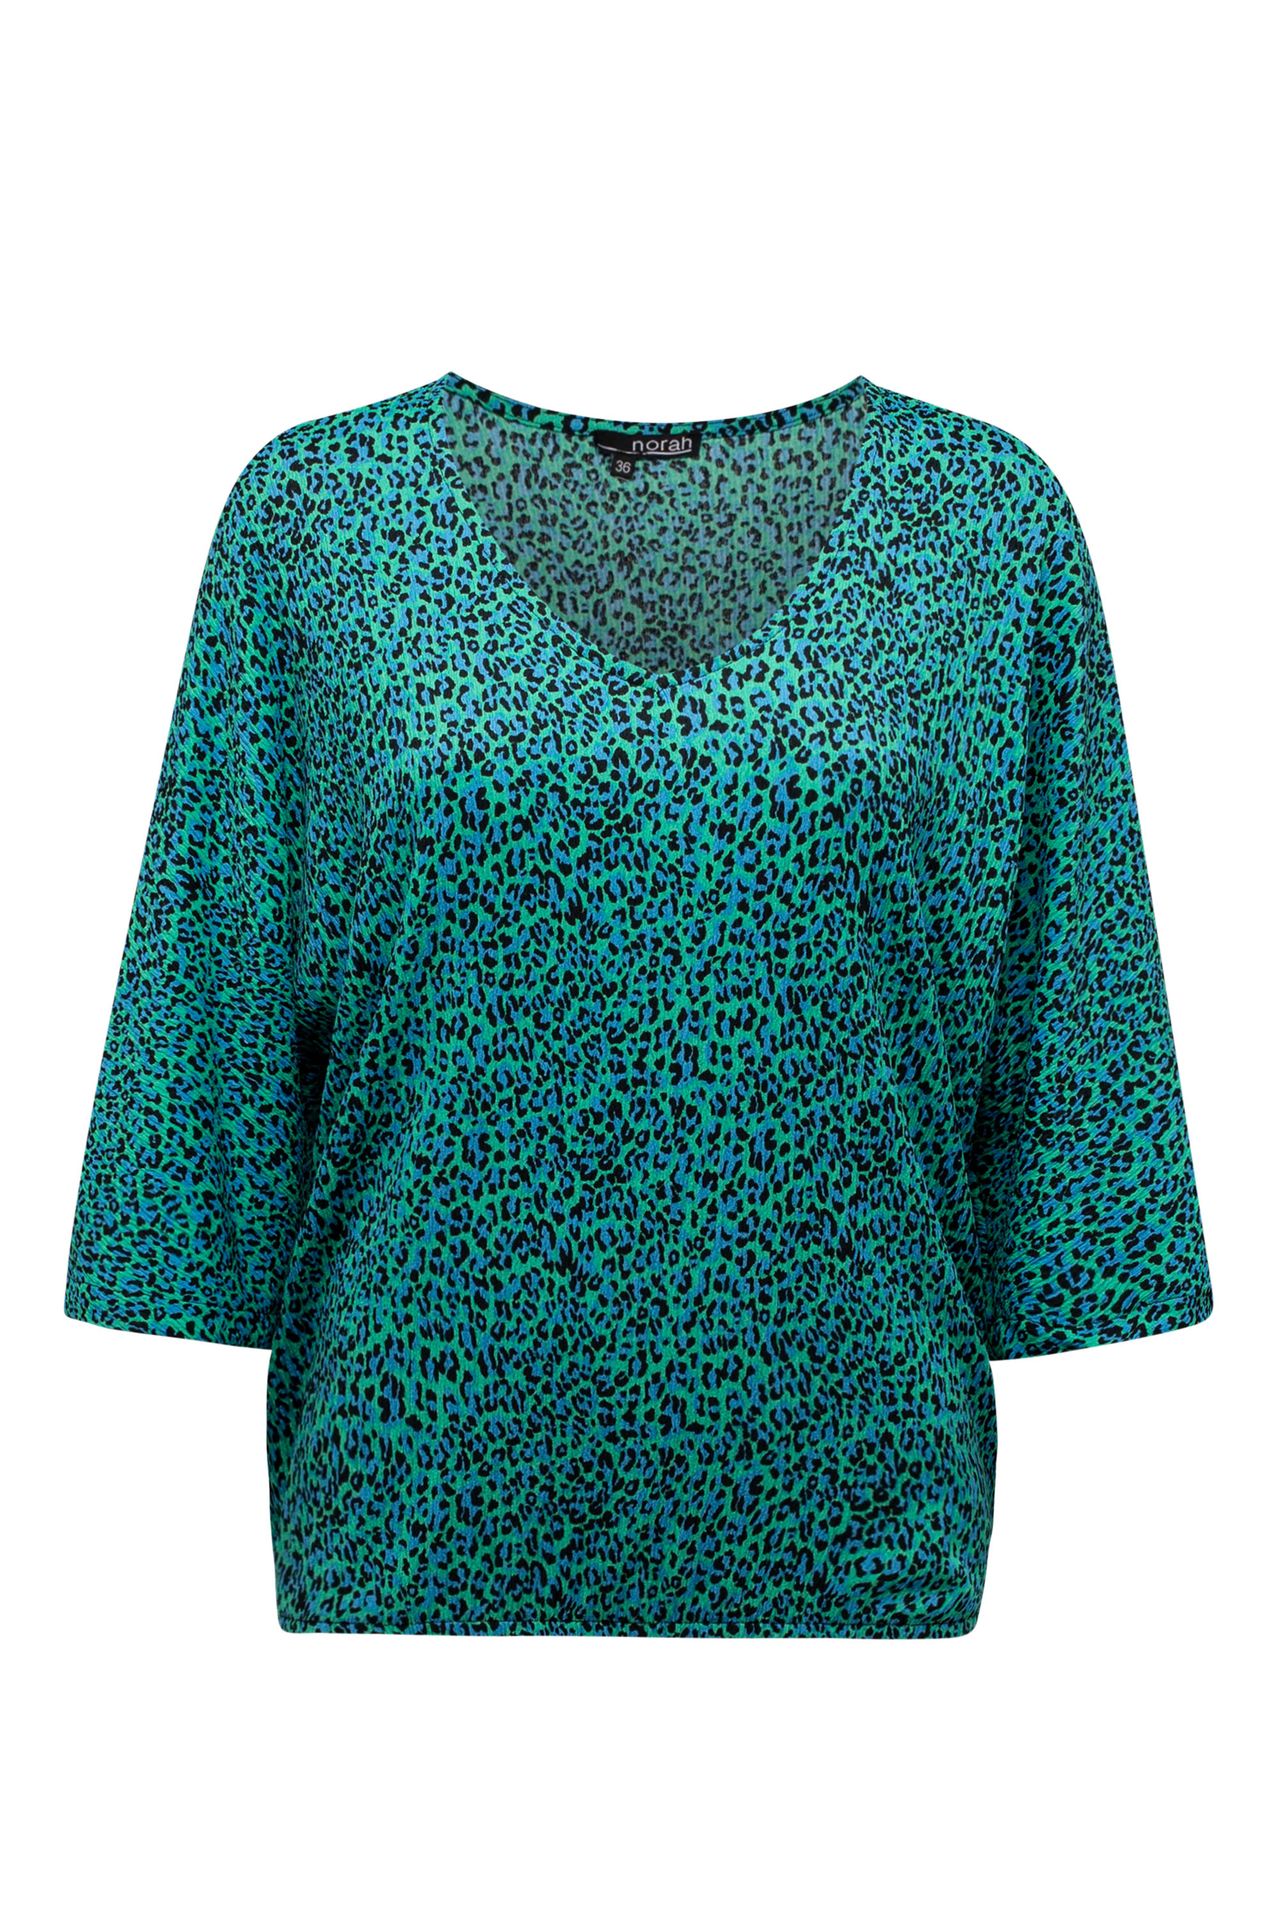 Norah Groen shirt met driekwart mouwen green/blue 213430-534